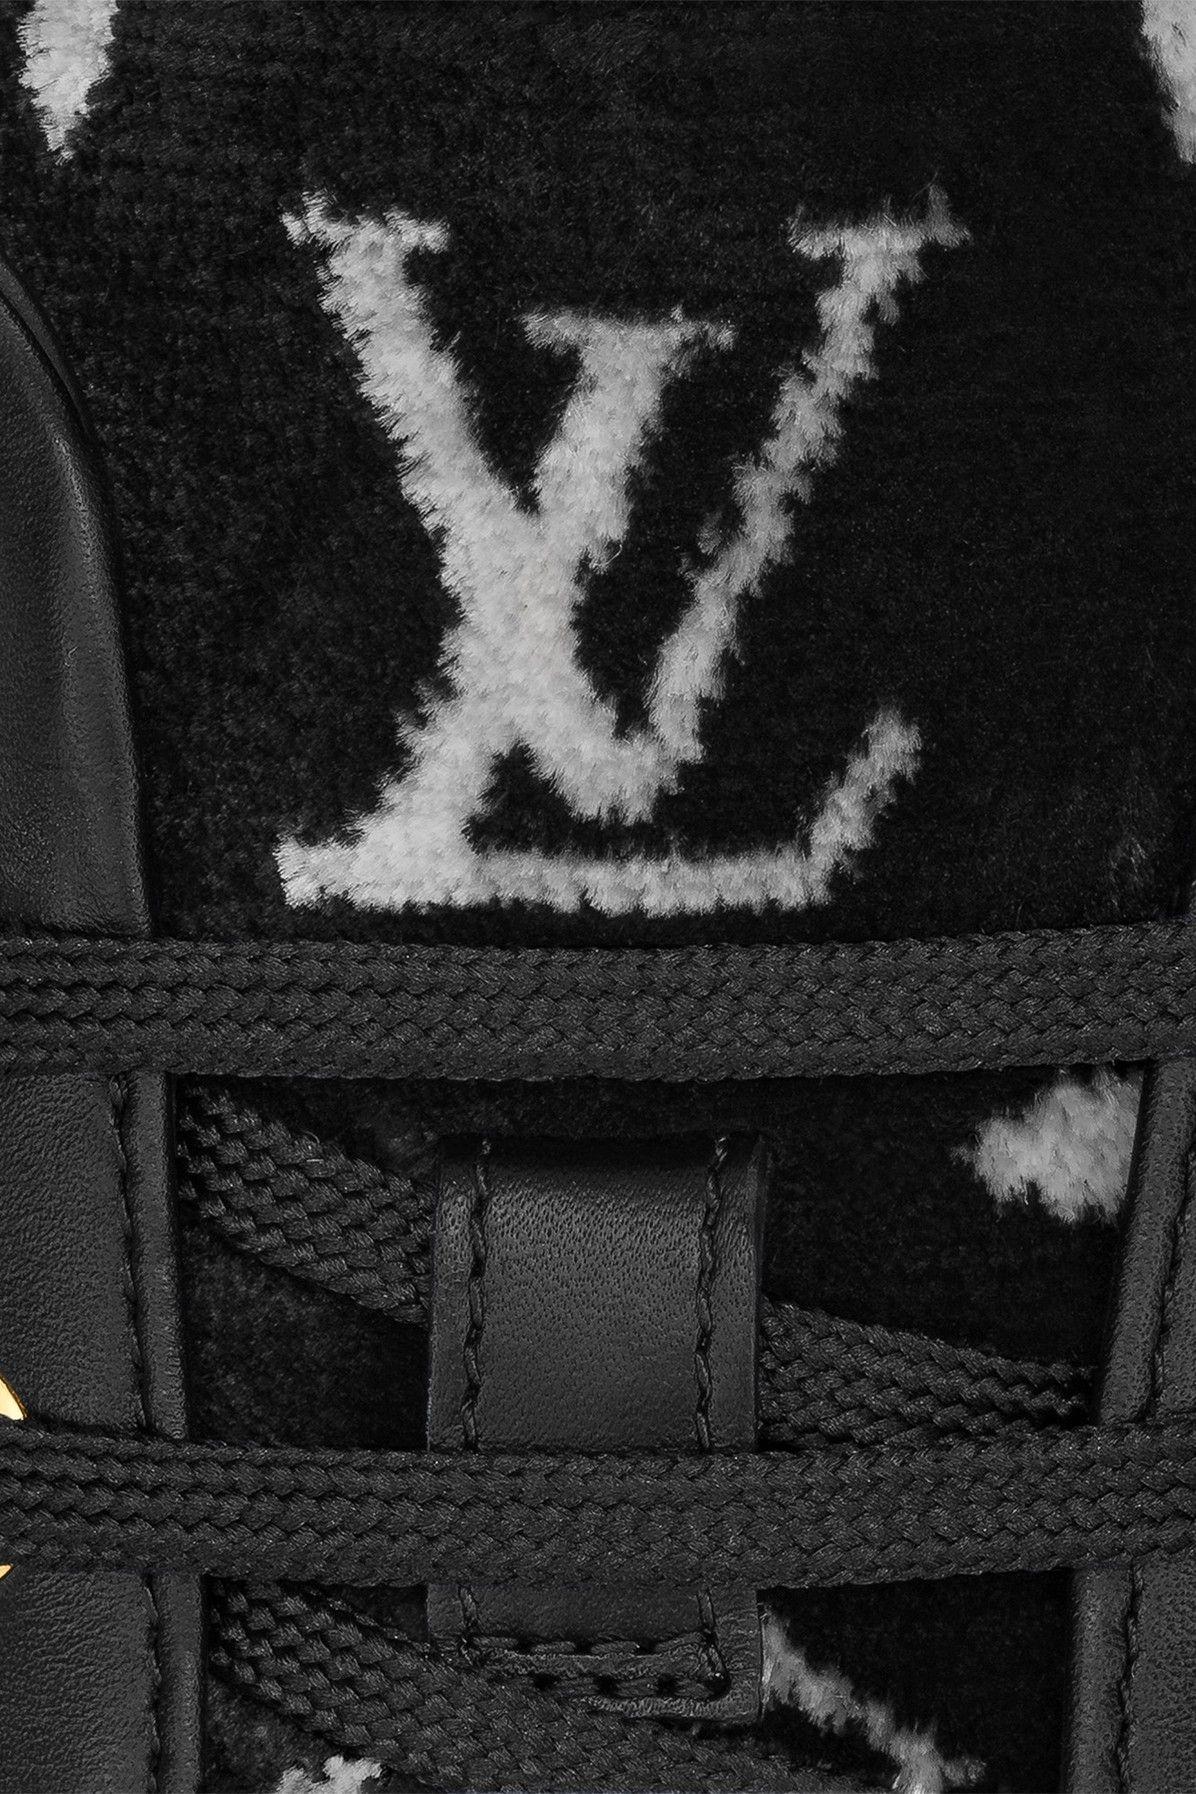 WMNS) LOUIS VUITTON LV Stellar Sneakers Black 1A87F4 - KICKS CREW